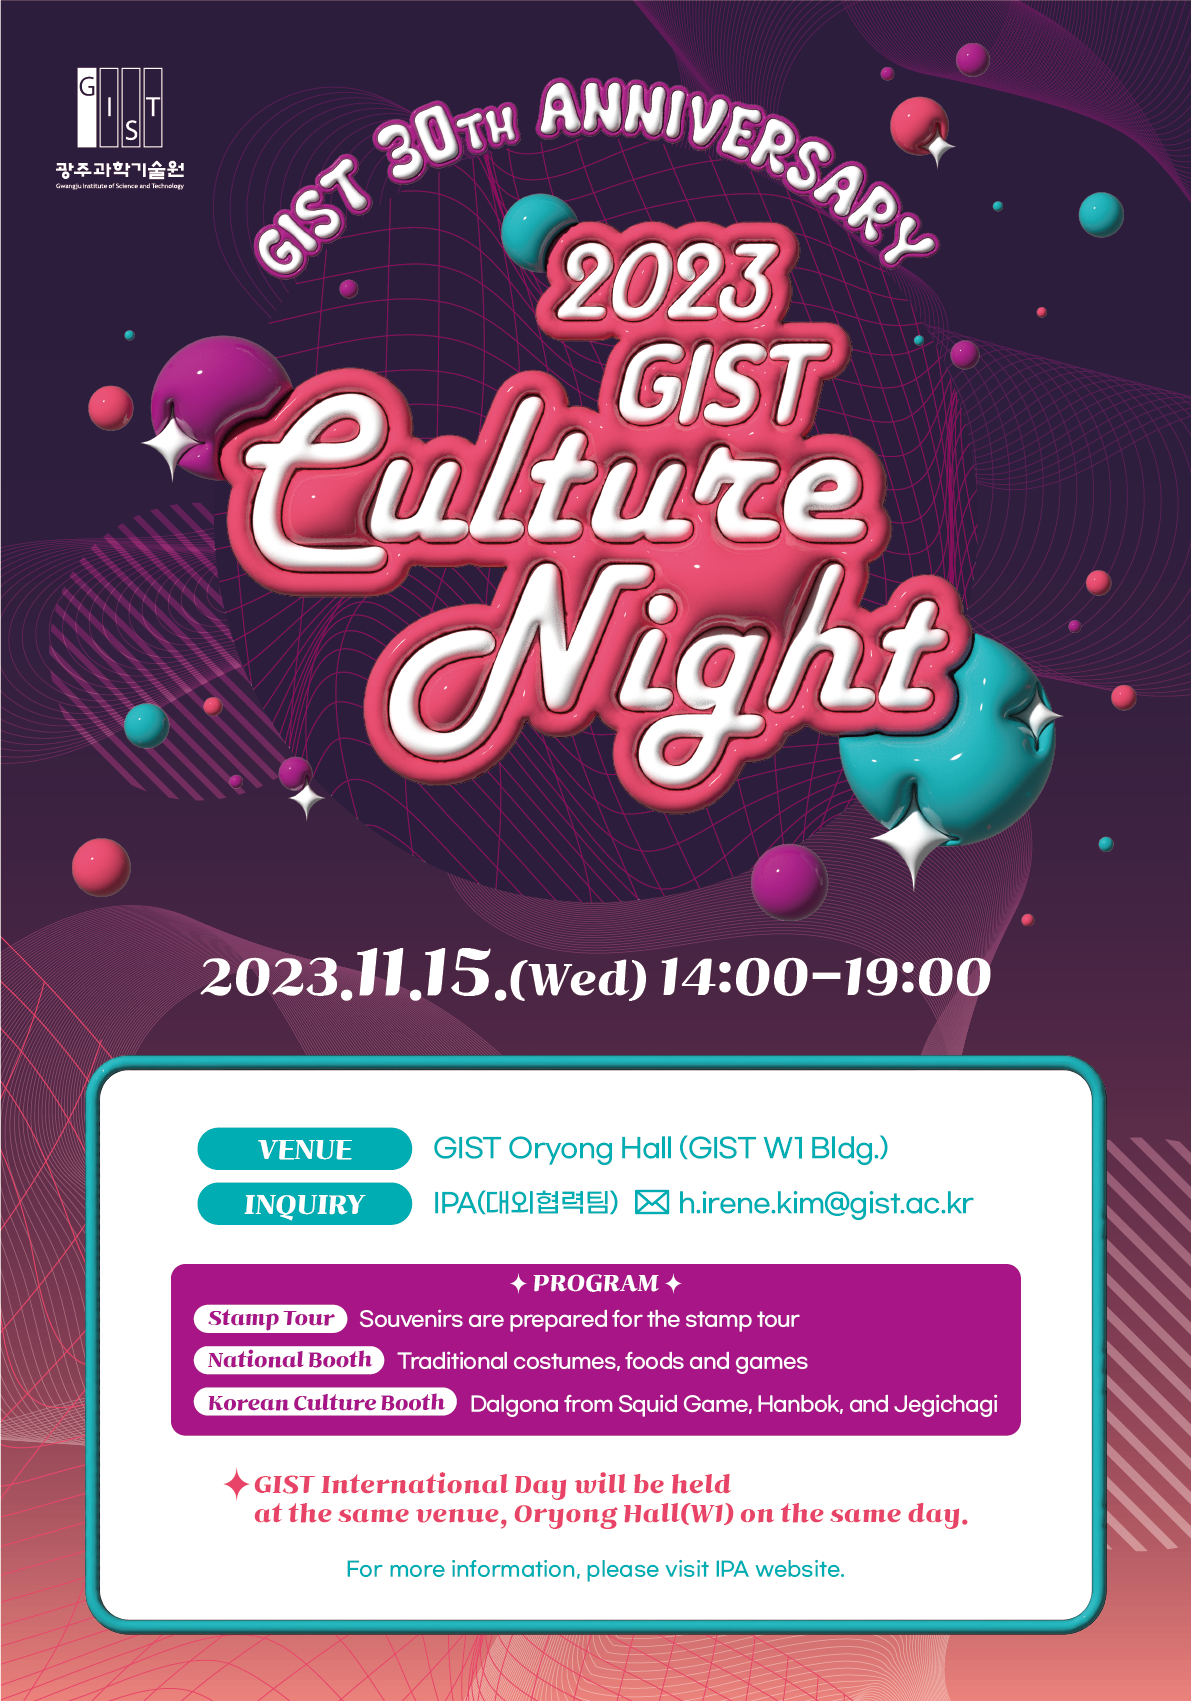 [대외협력팀] 2023 GIST 문화의 밤(GIST Culture Night) 안내 / Notice on 2023 GIST Culture Night 이미지